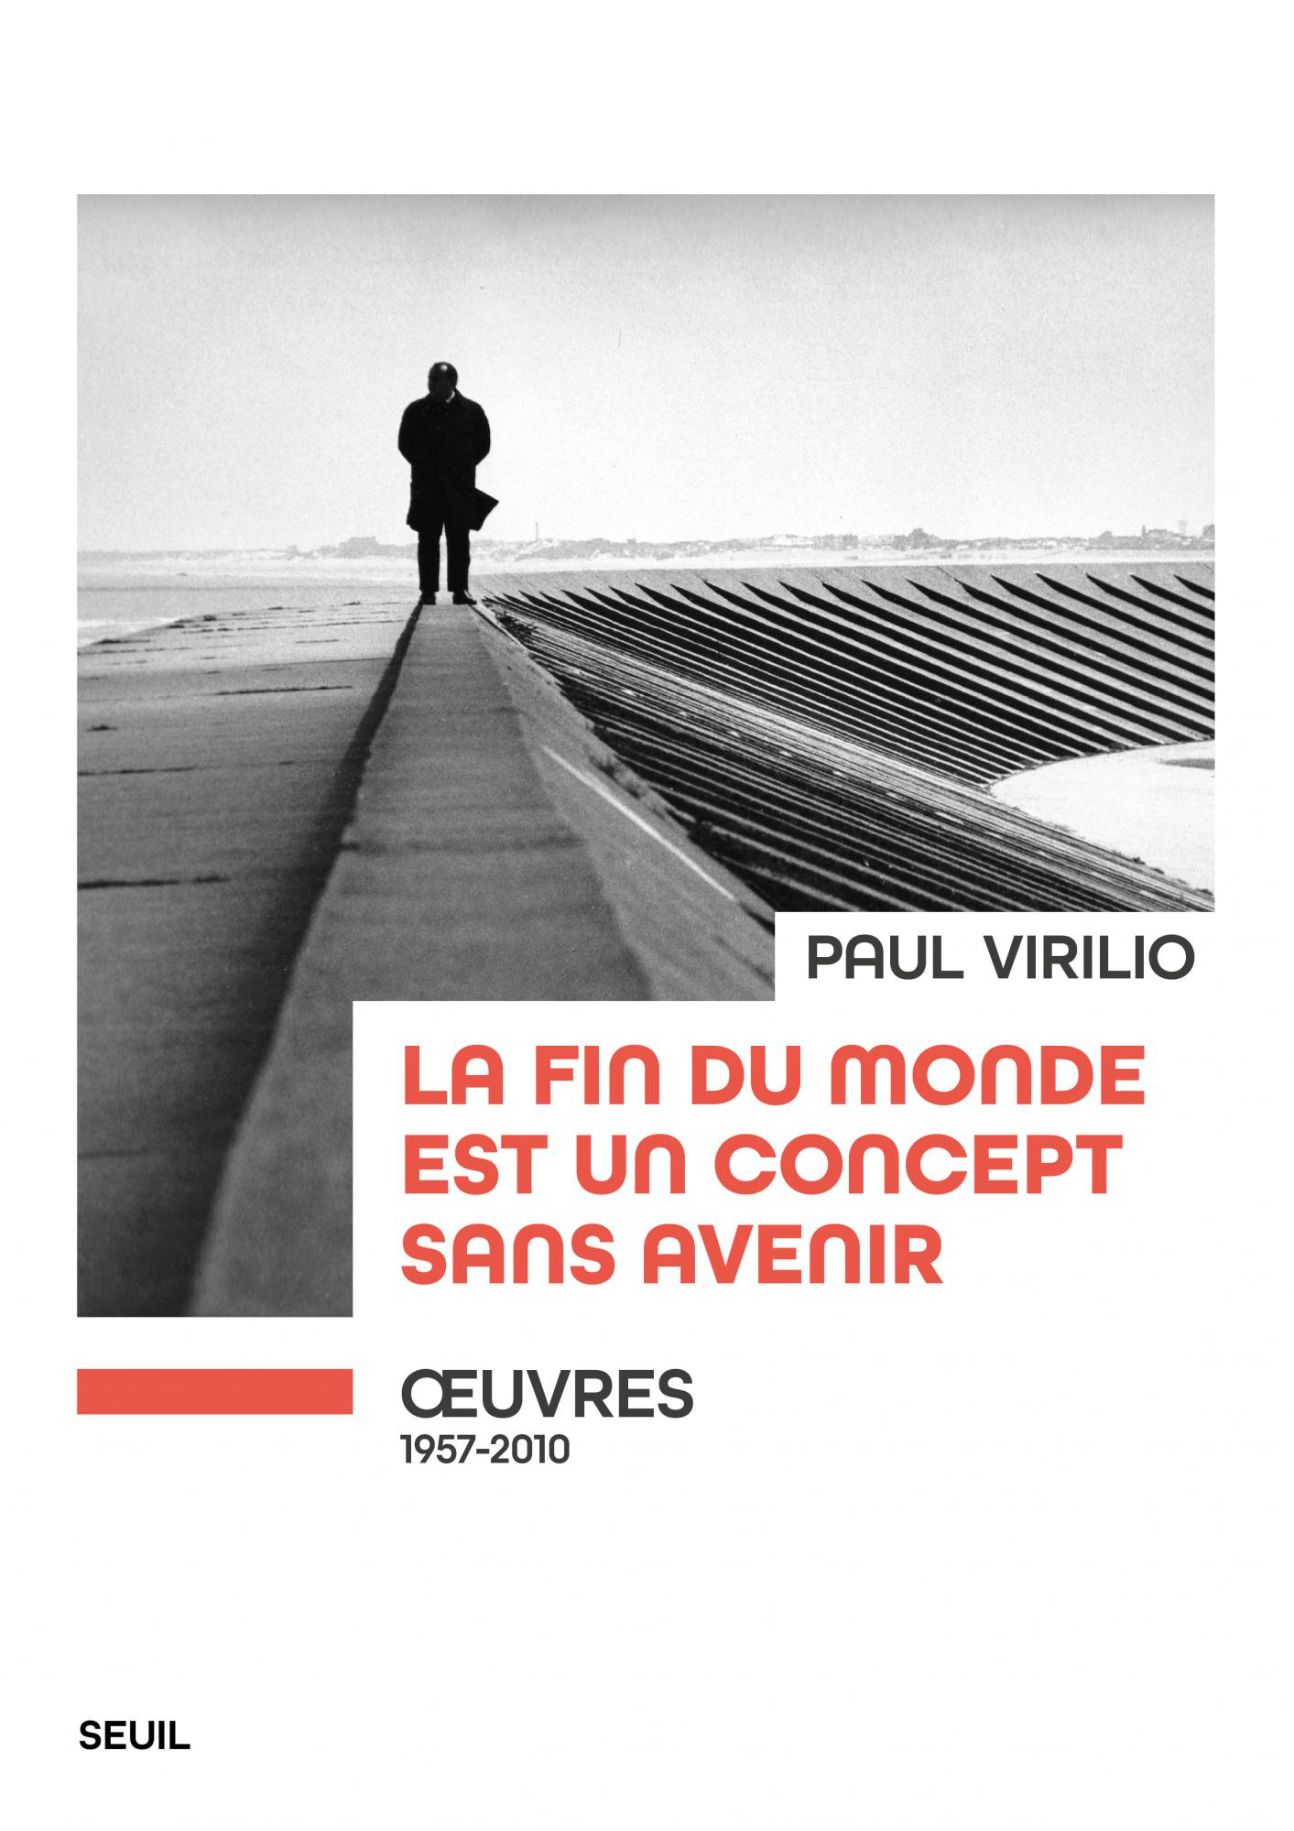 Paul Virilio, La fin du monde est un concept sans avenir. Œuvres (1957-2010)